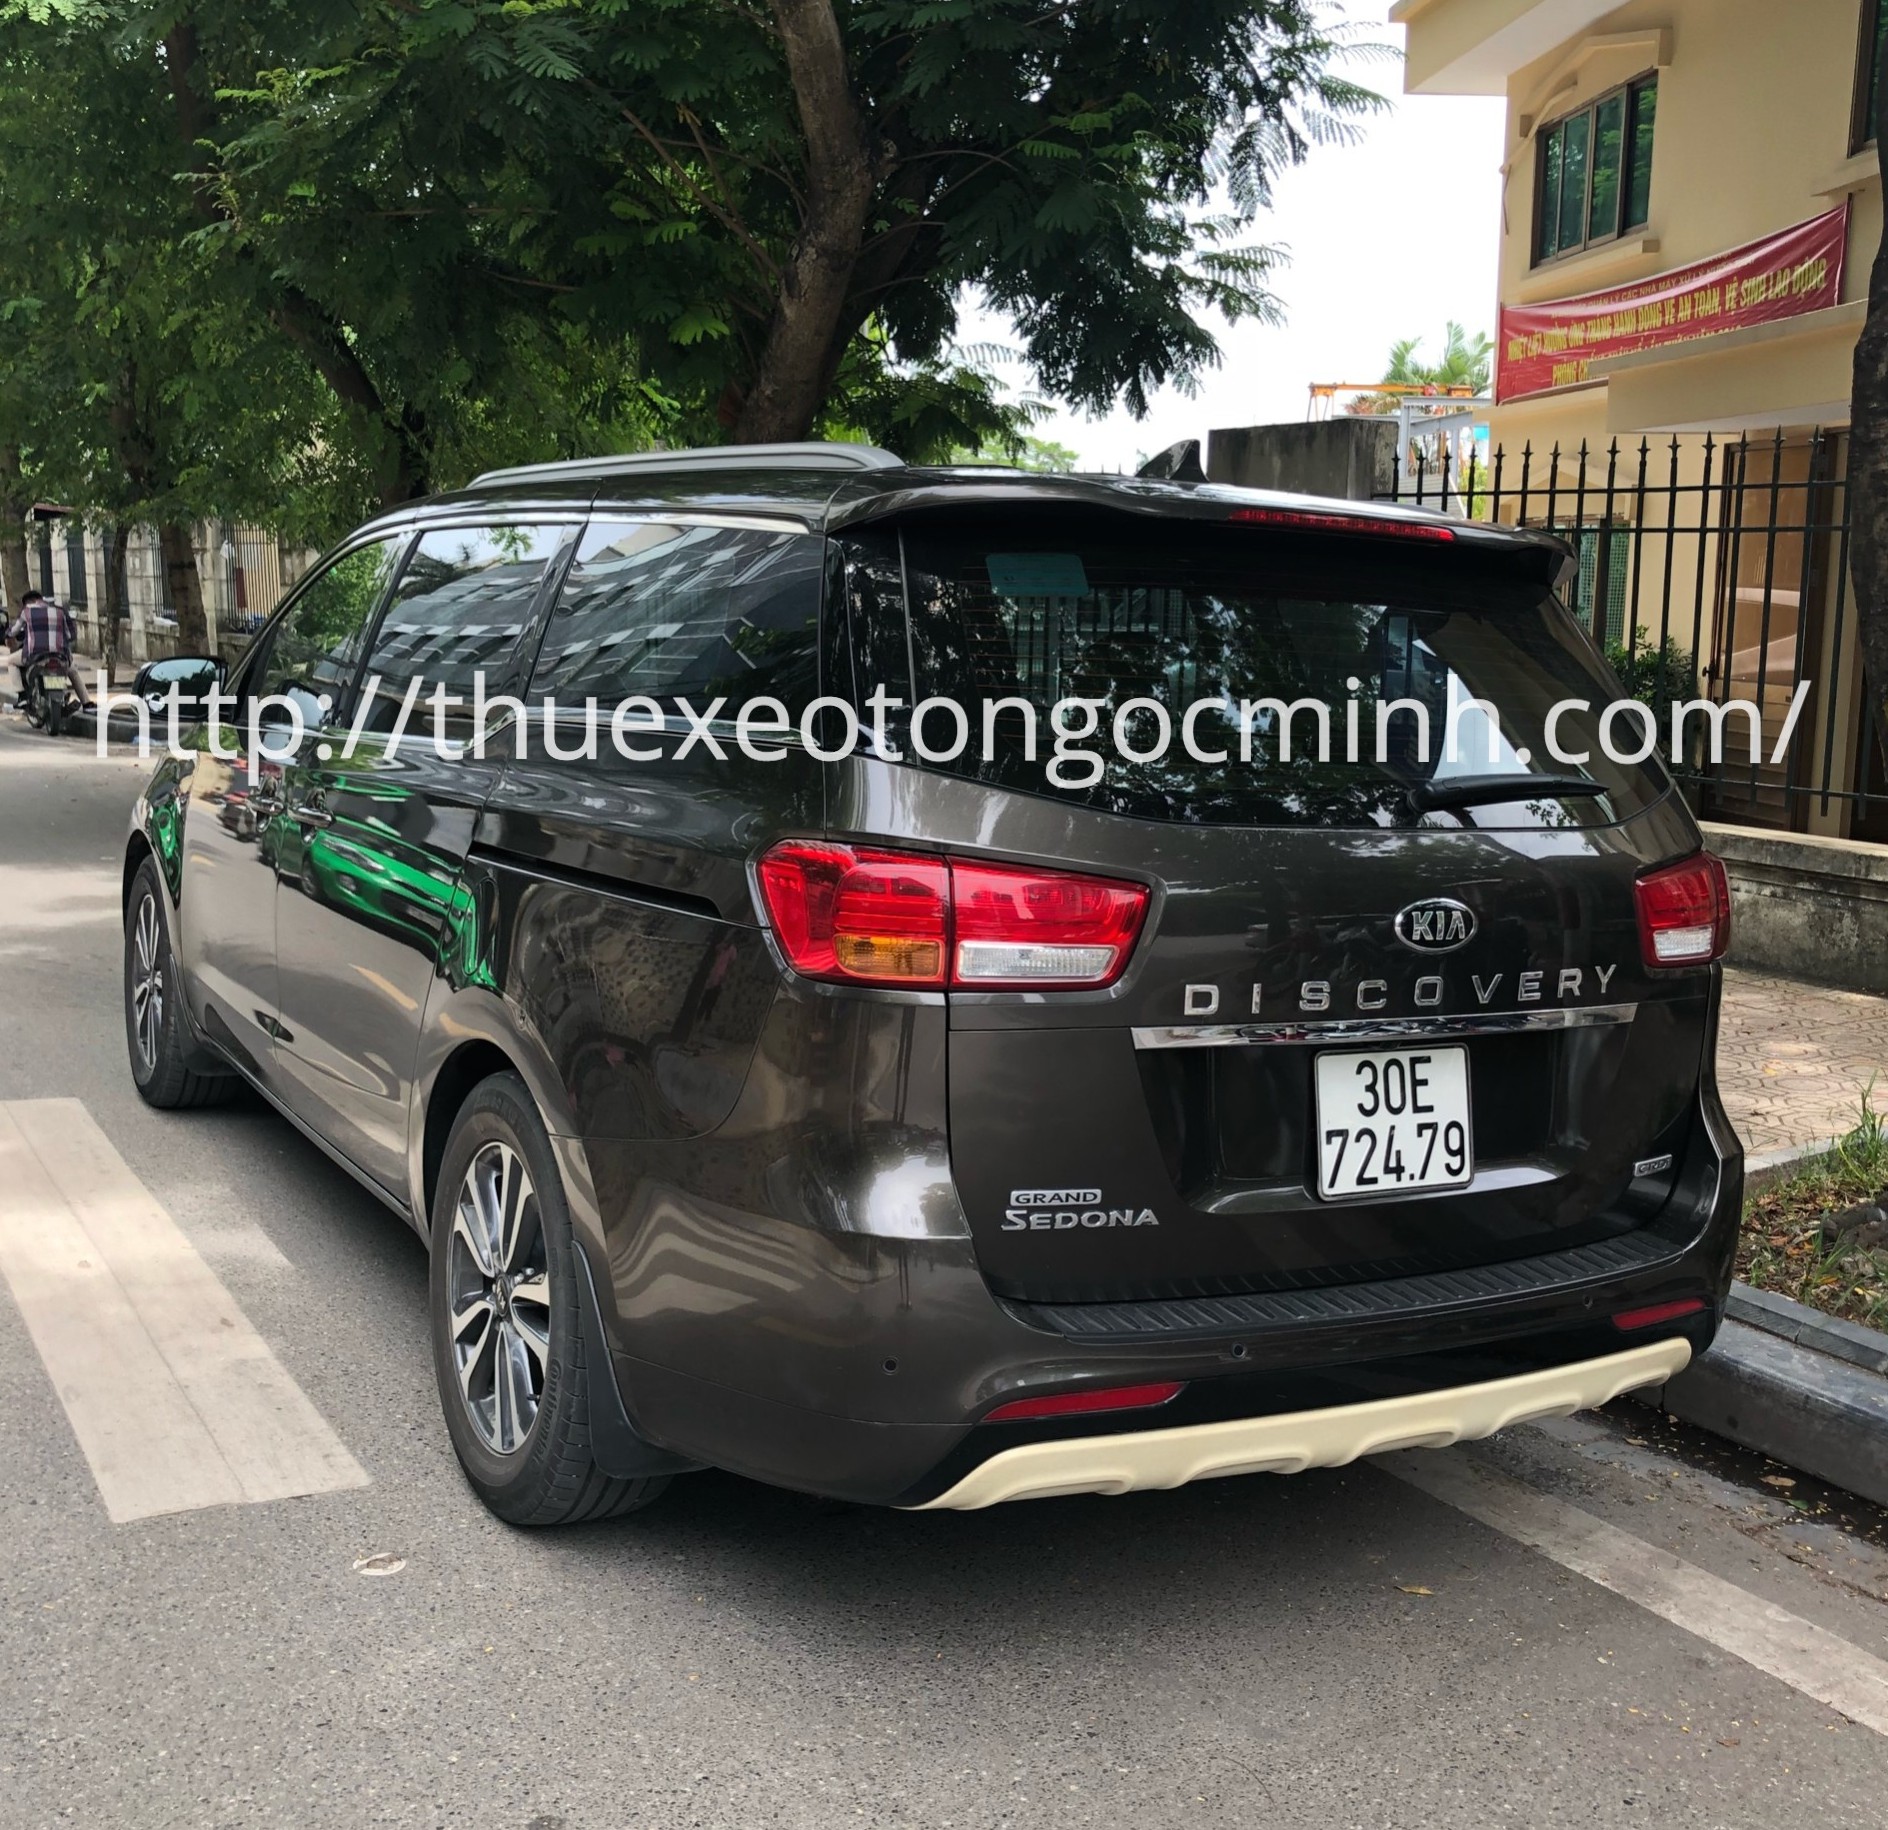 Thuê xe 7 chỗ Kia Sedona tại Hà Nội